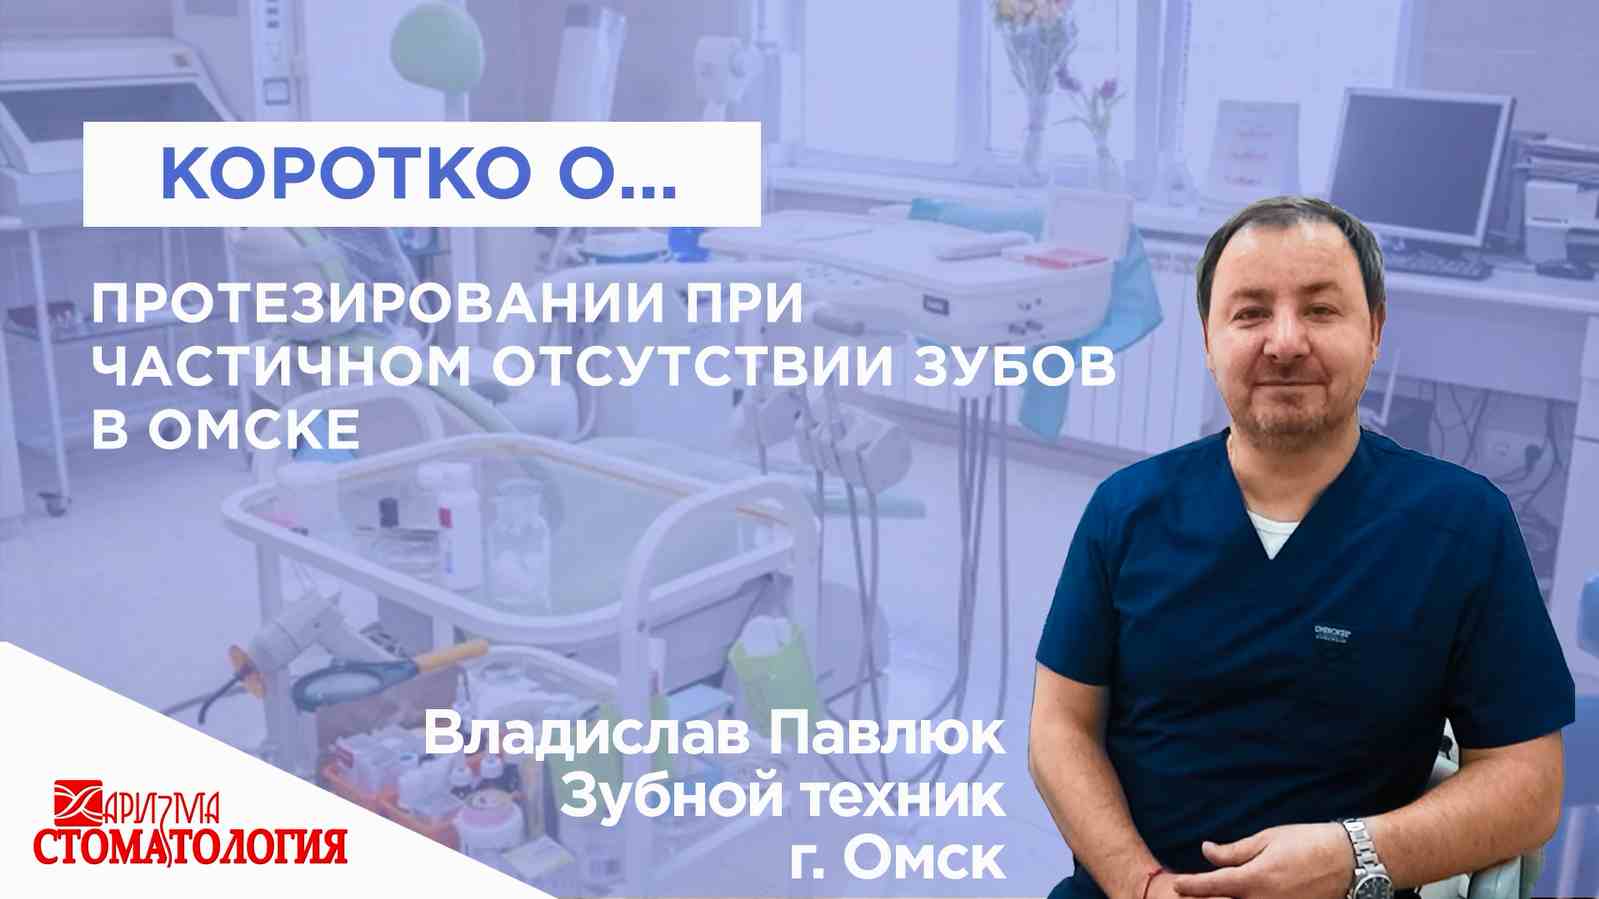 Протезирование при частичном отсутствии зубов в Омске по доступной цене